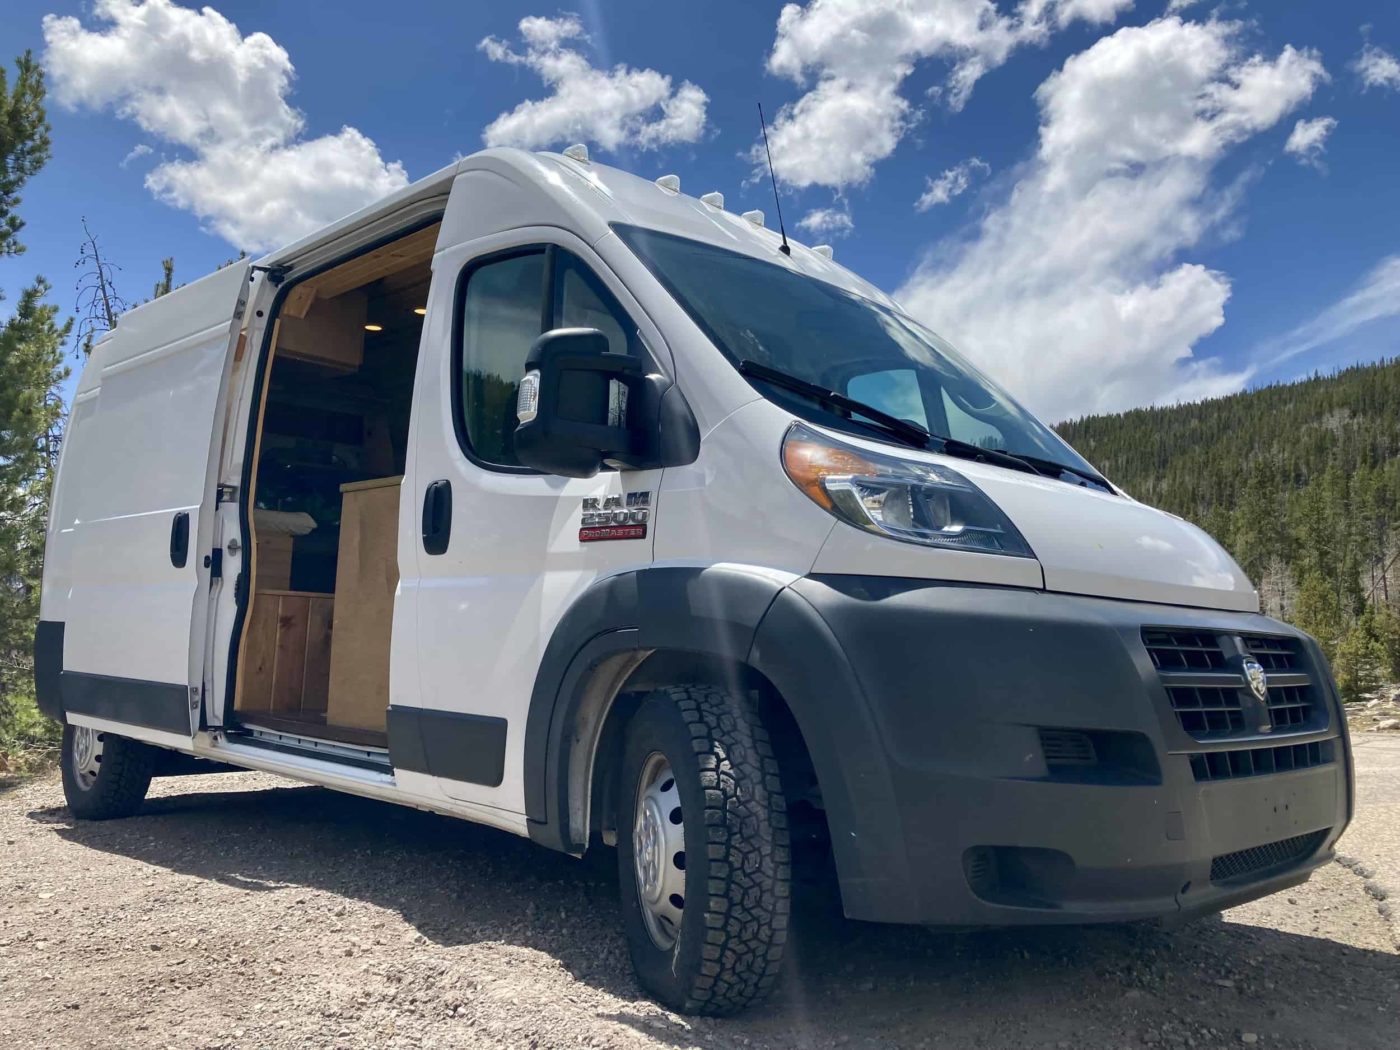 2017 Ram ProMaster Camper Van For Sale in Salt Lake City, Utah Van Viewer